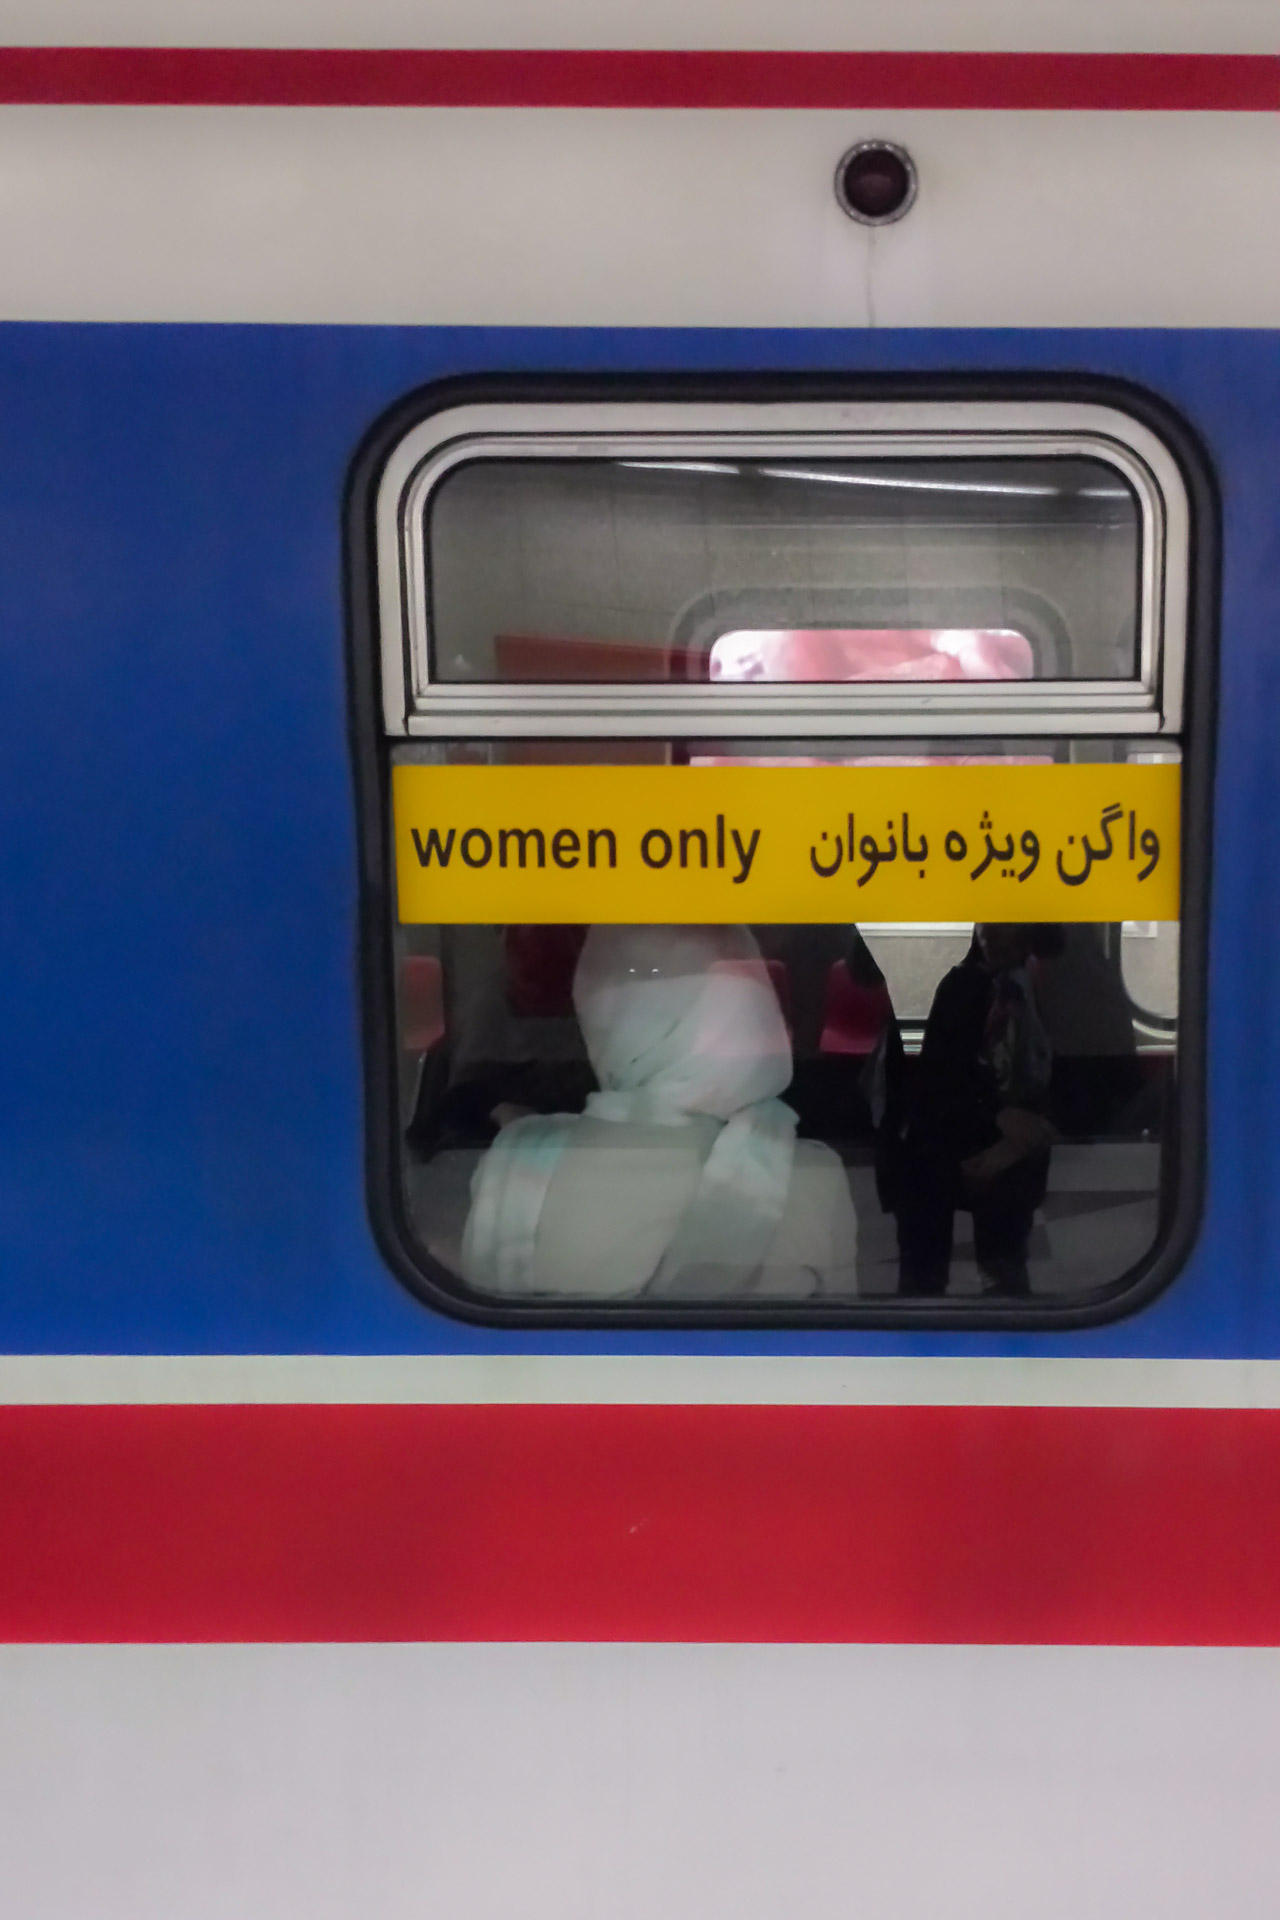 A janela de um vagão de metro em Teerã escrito "Women only", somente mulheres em ingles